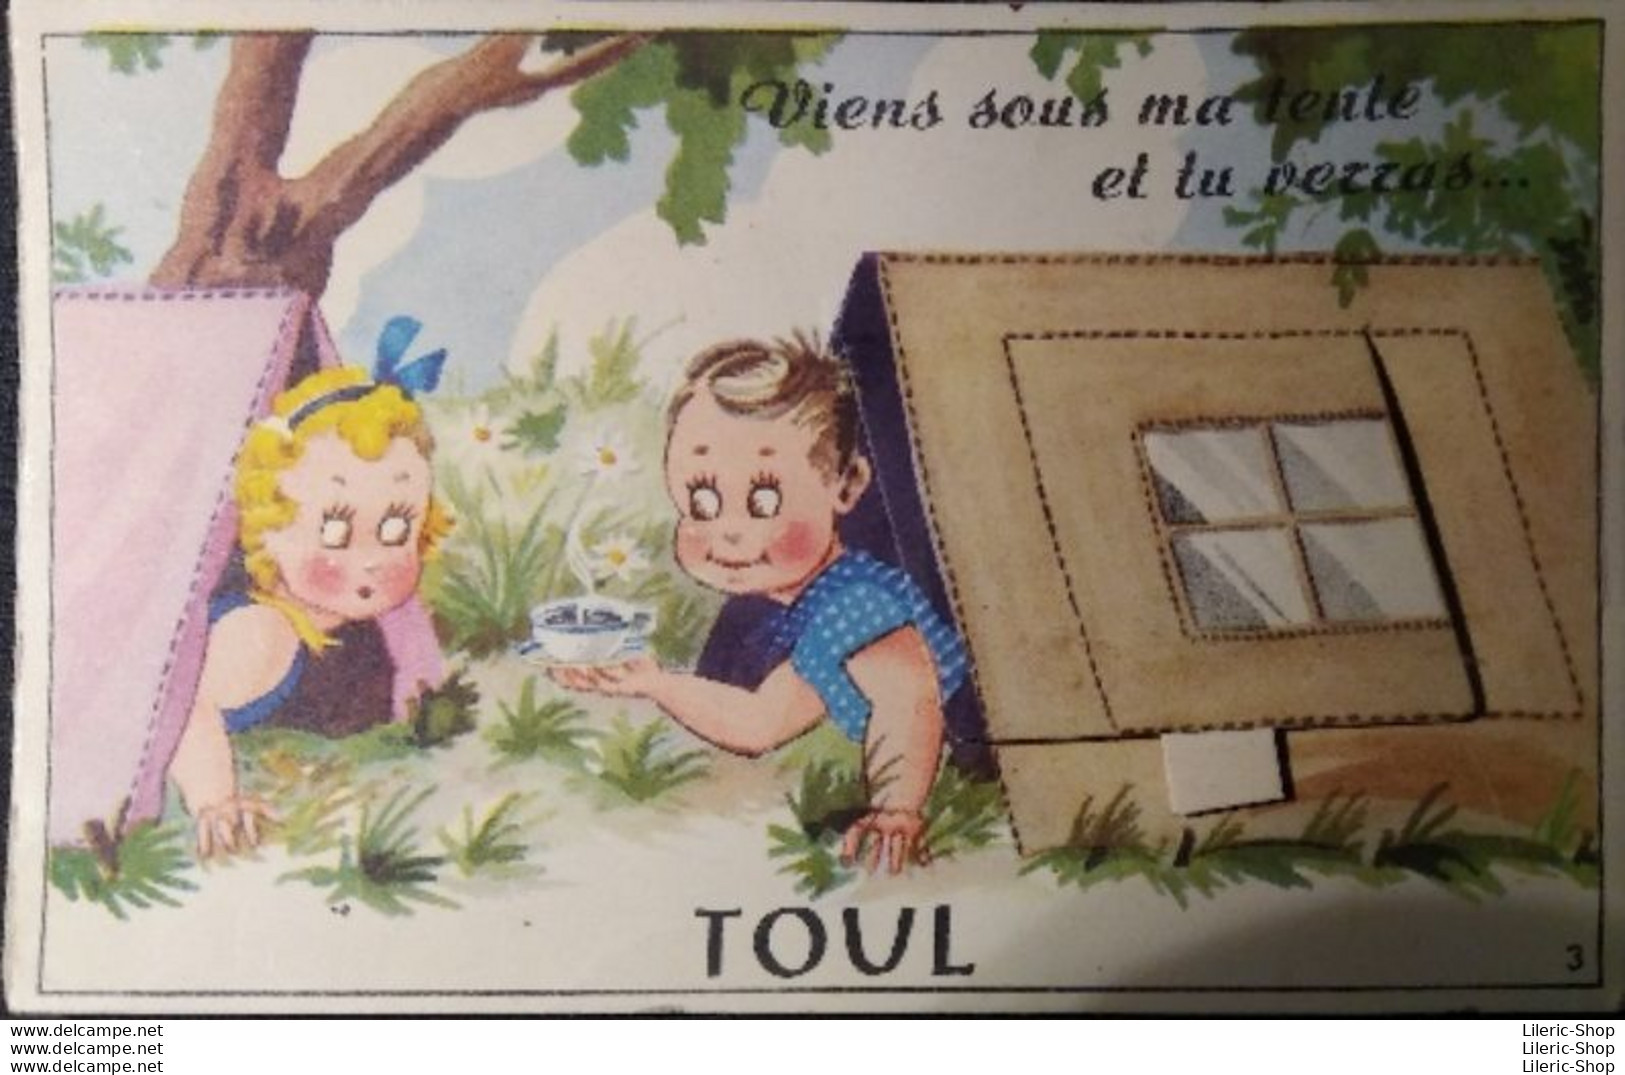 TOUL (54)▬ Carte à Système 1954 ▬ Viens Sous Ma Tente Et Tu Verras ▬ Dépliant 10 Vues Intact ▬ Éd. CAP - Toul